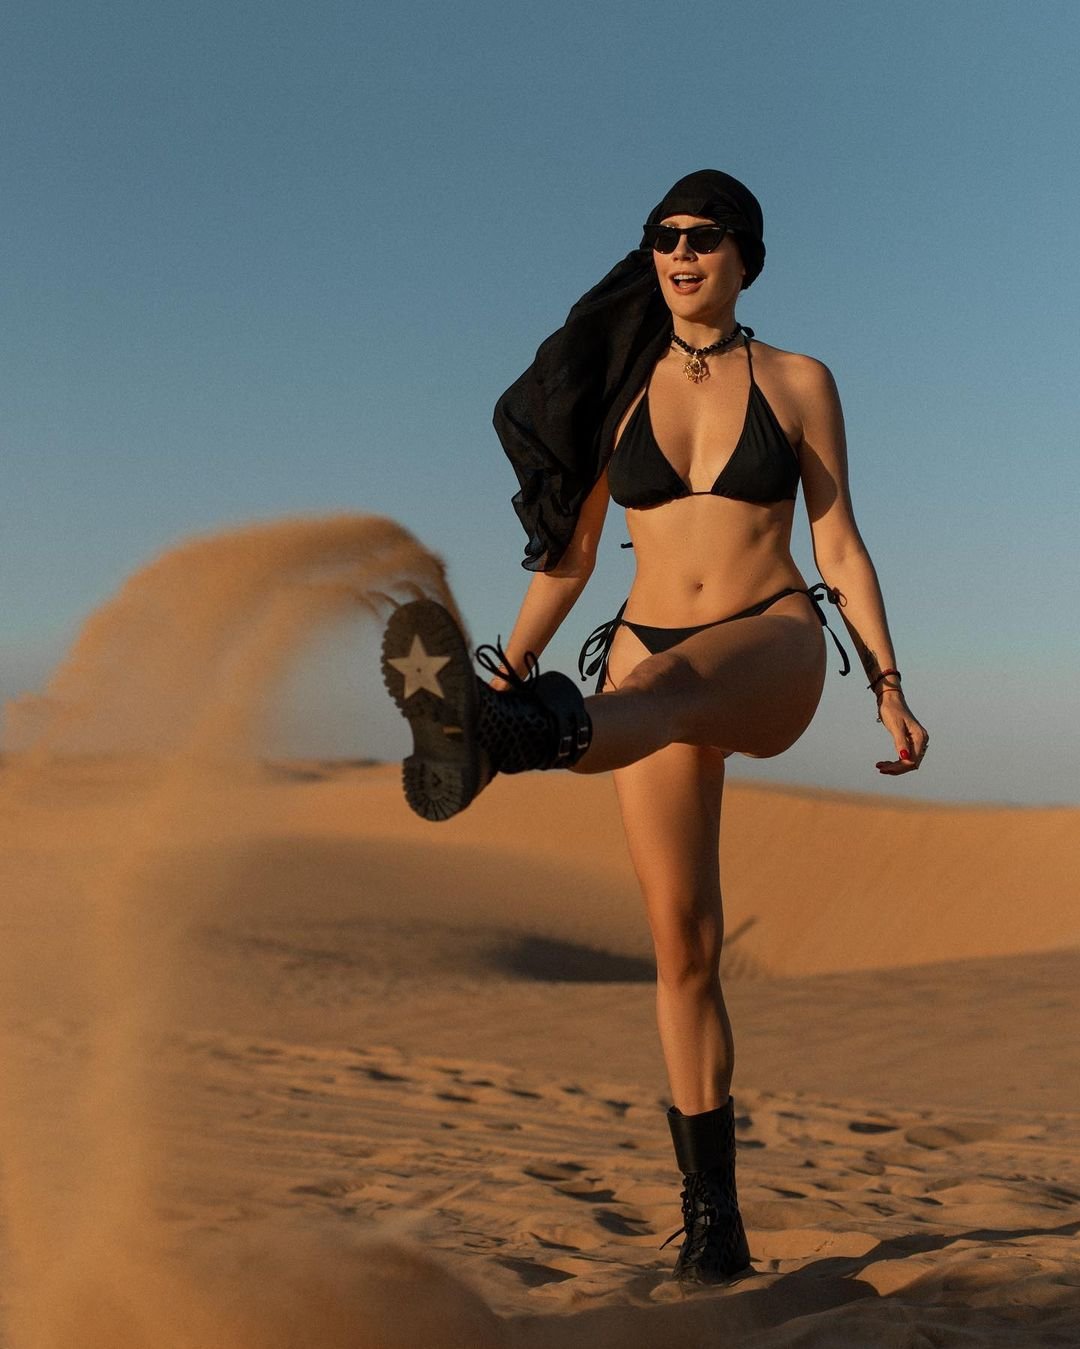 Елена Летучая предстала в чёрном бикини и грубых полуботинках на фоне пустыни